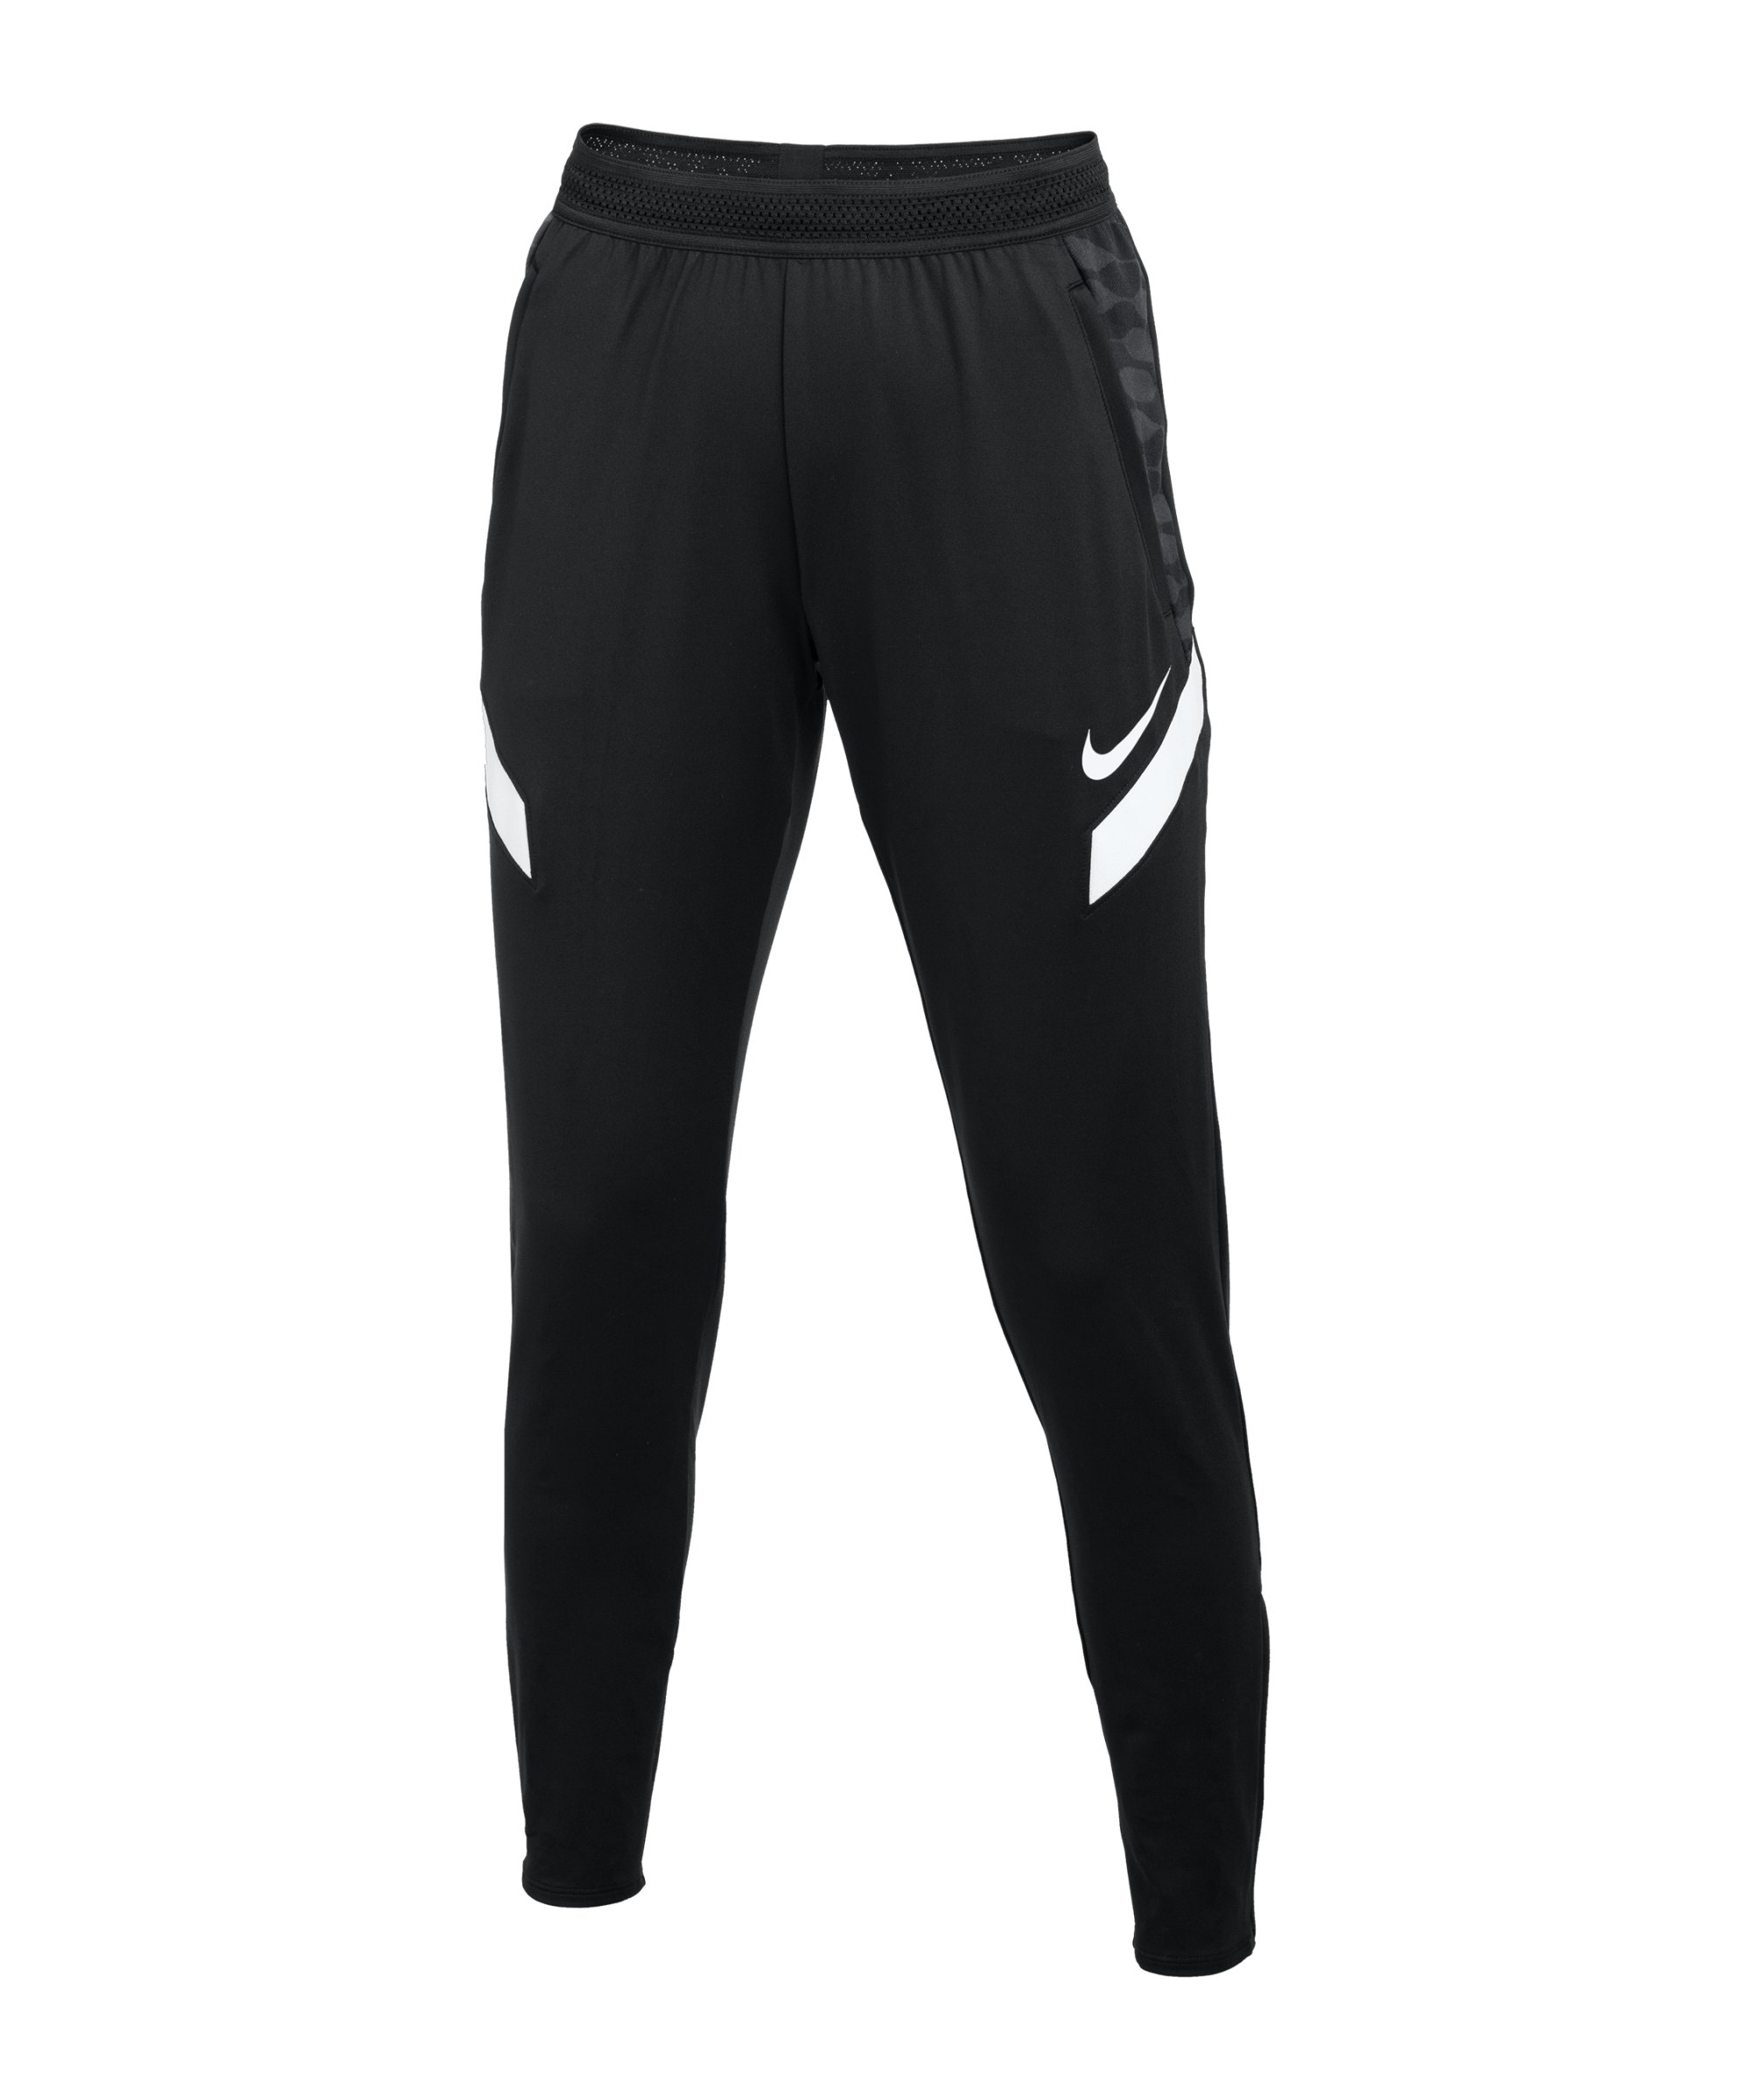 Nike Strike 21 Trainingshose Damen Schwarz F010 - schwarz